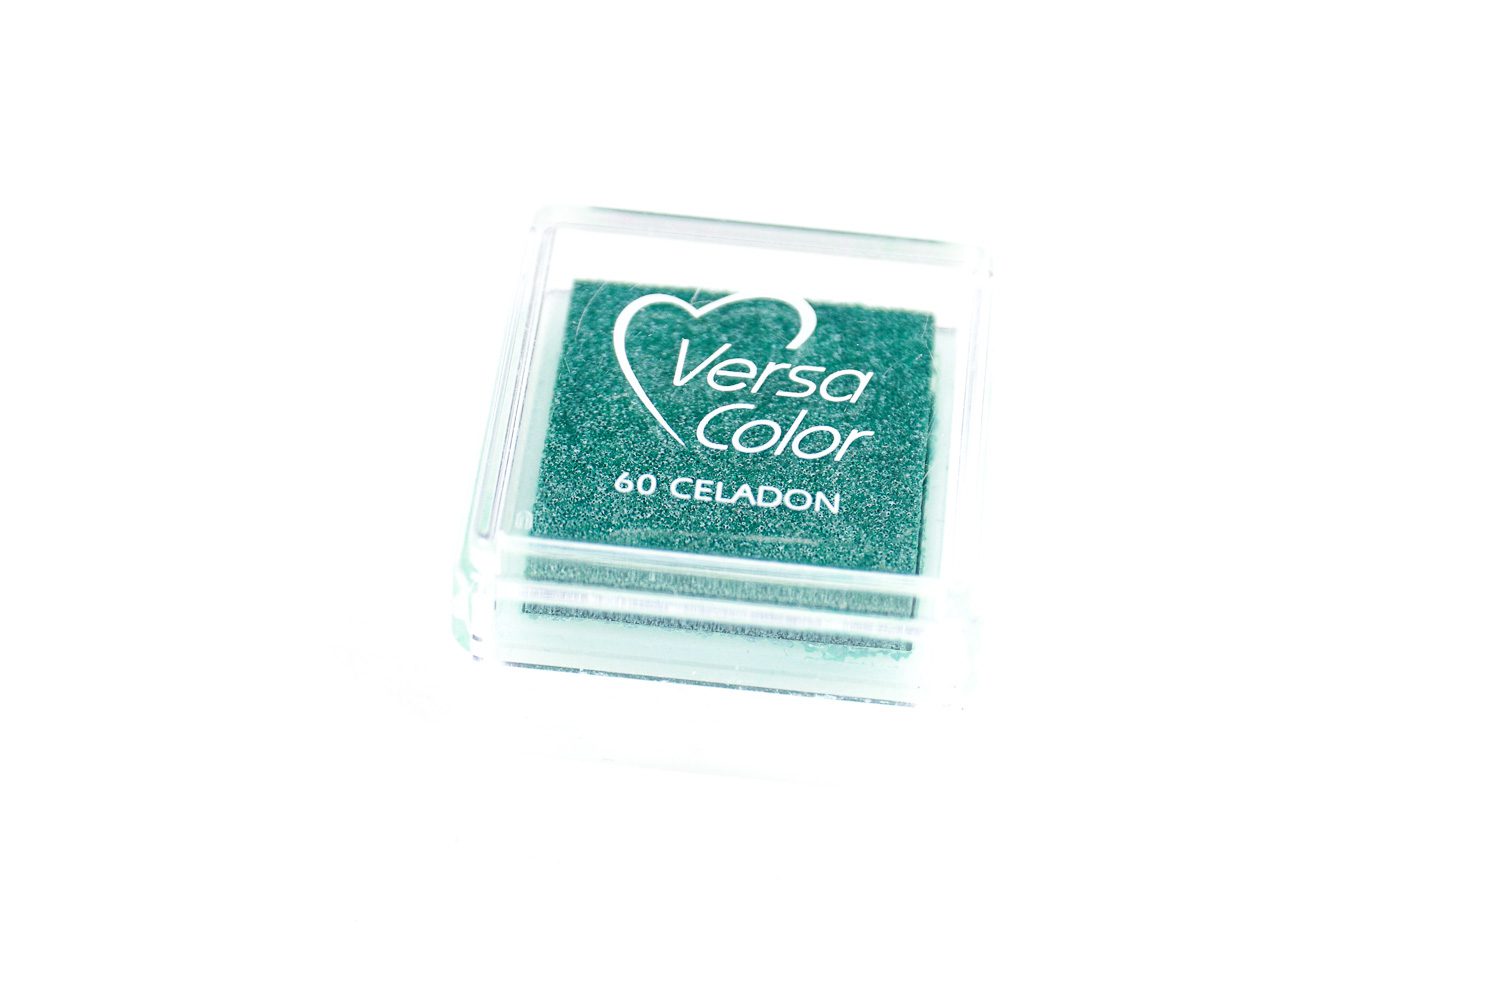 Mini Stempelkissen türkis von Versa Color Nr. 60 celadon